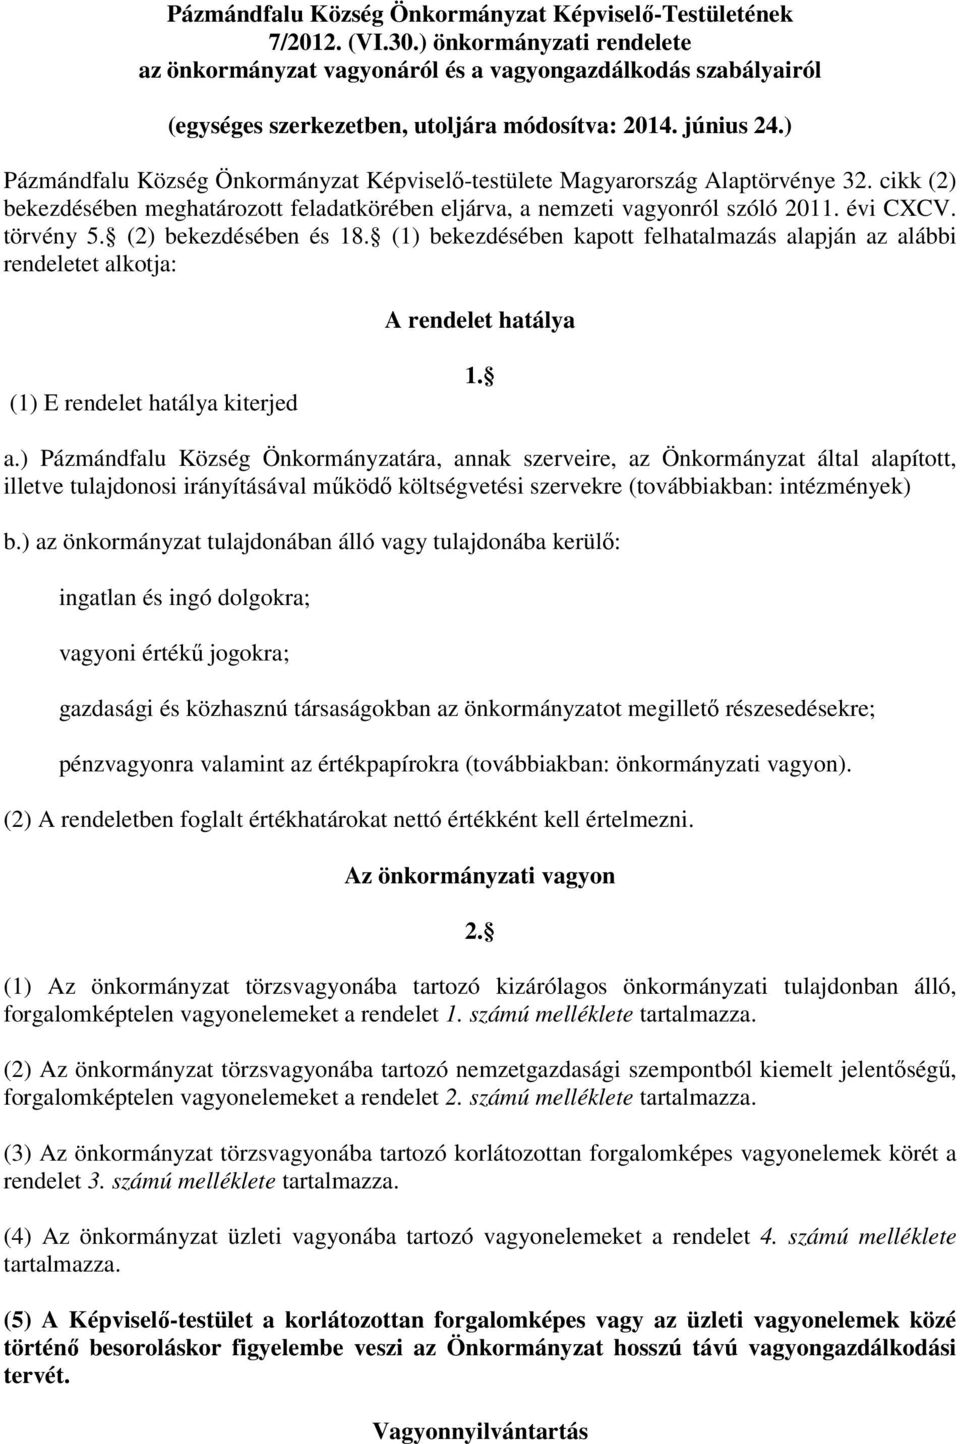 ) Pázmándfalu Község Önkormányzat Képviselő-testülete Magyarország Alaptörvénye 32. cikk (2) bekezdésében meghatározott feladatkörében eljárva, a nemzeti vagyonról szóló 2011. évi CXCV. törvény 5.